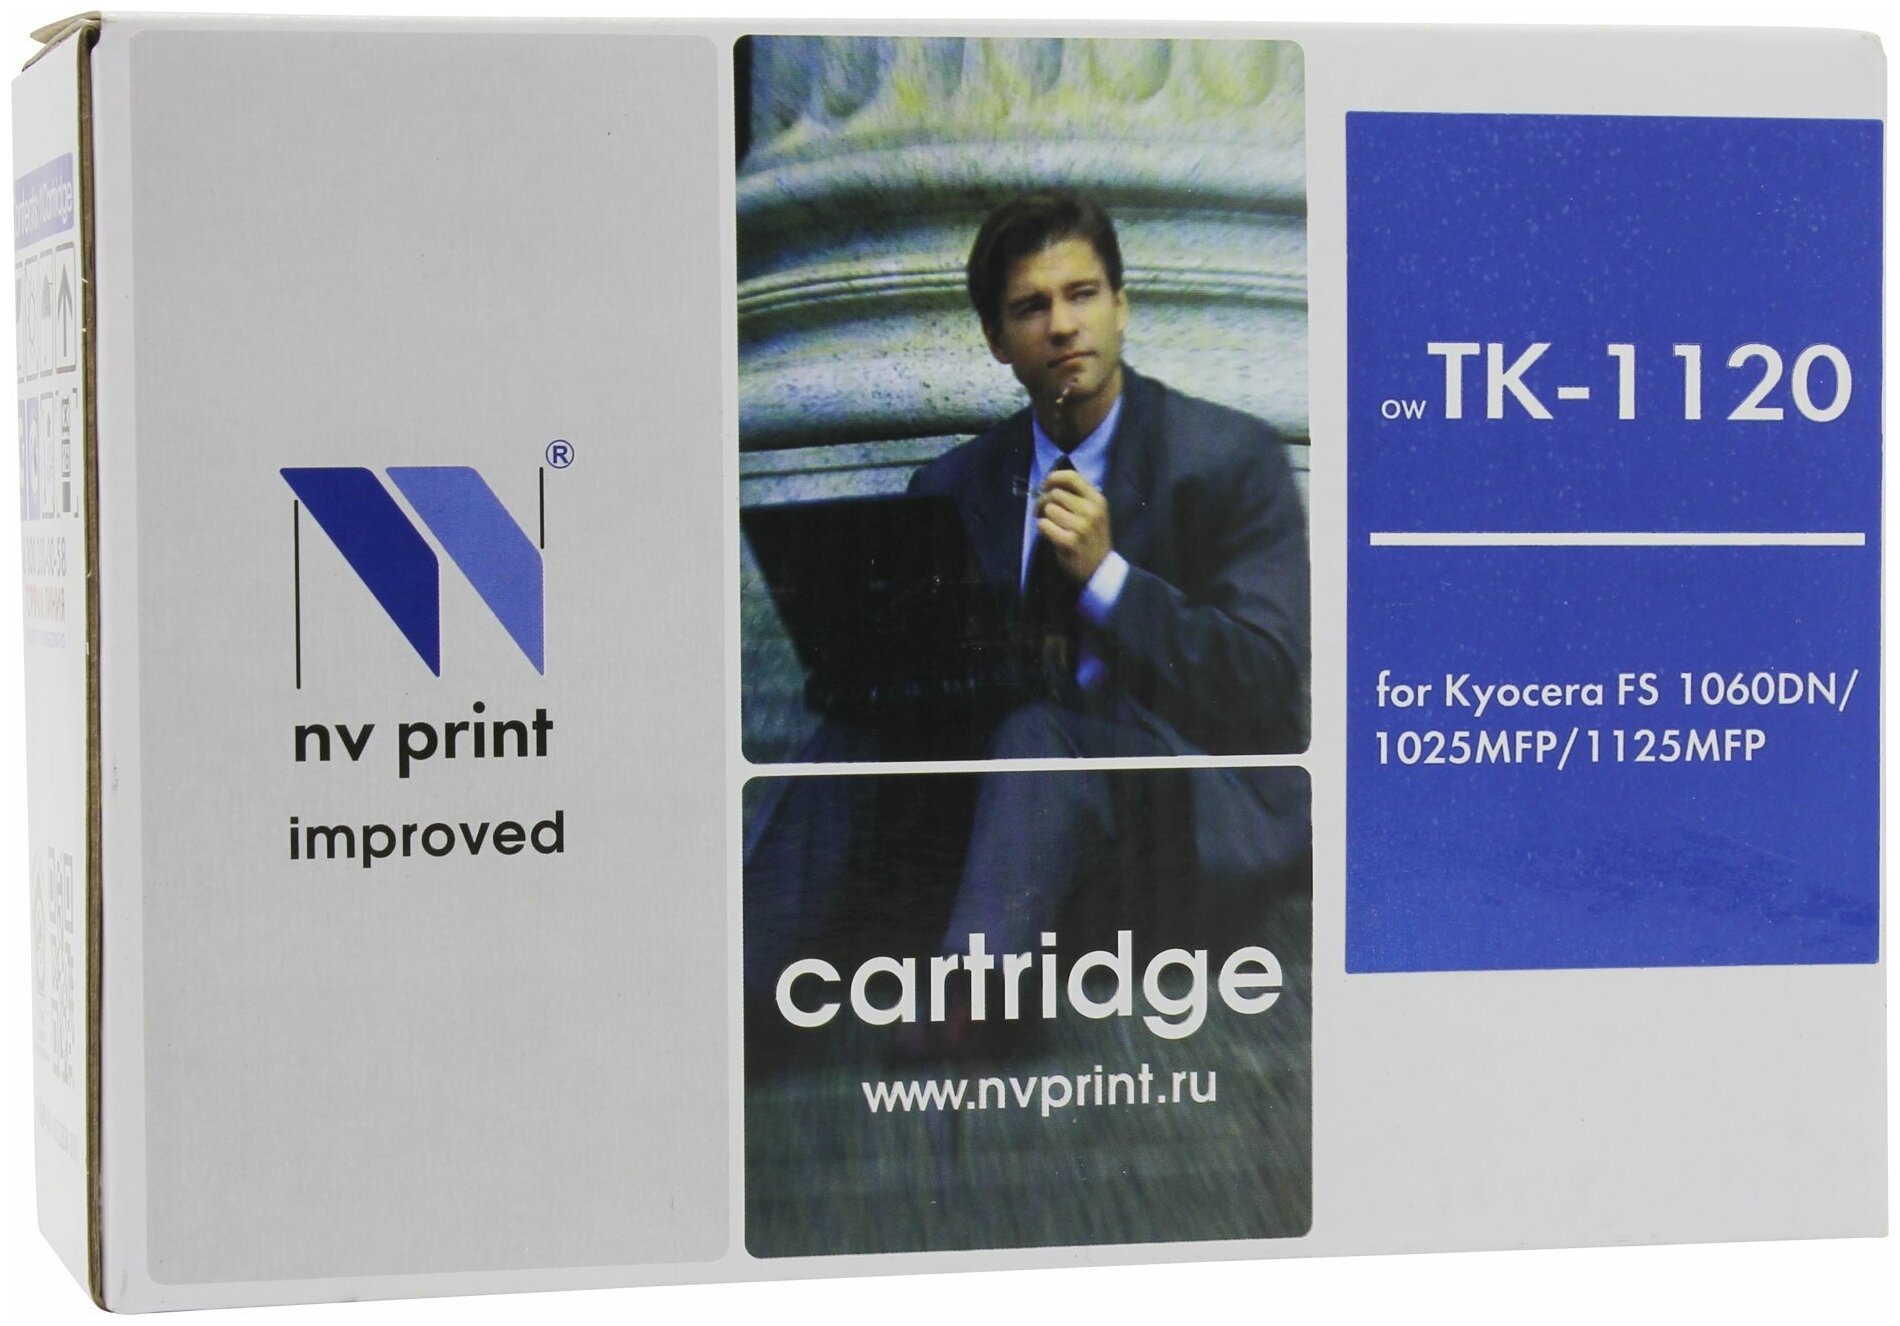 Картридж NV Print TK-1120 совместимый для Koyacera FS1060DN/1025MFP/1125MFP (3000 стр.)